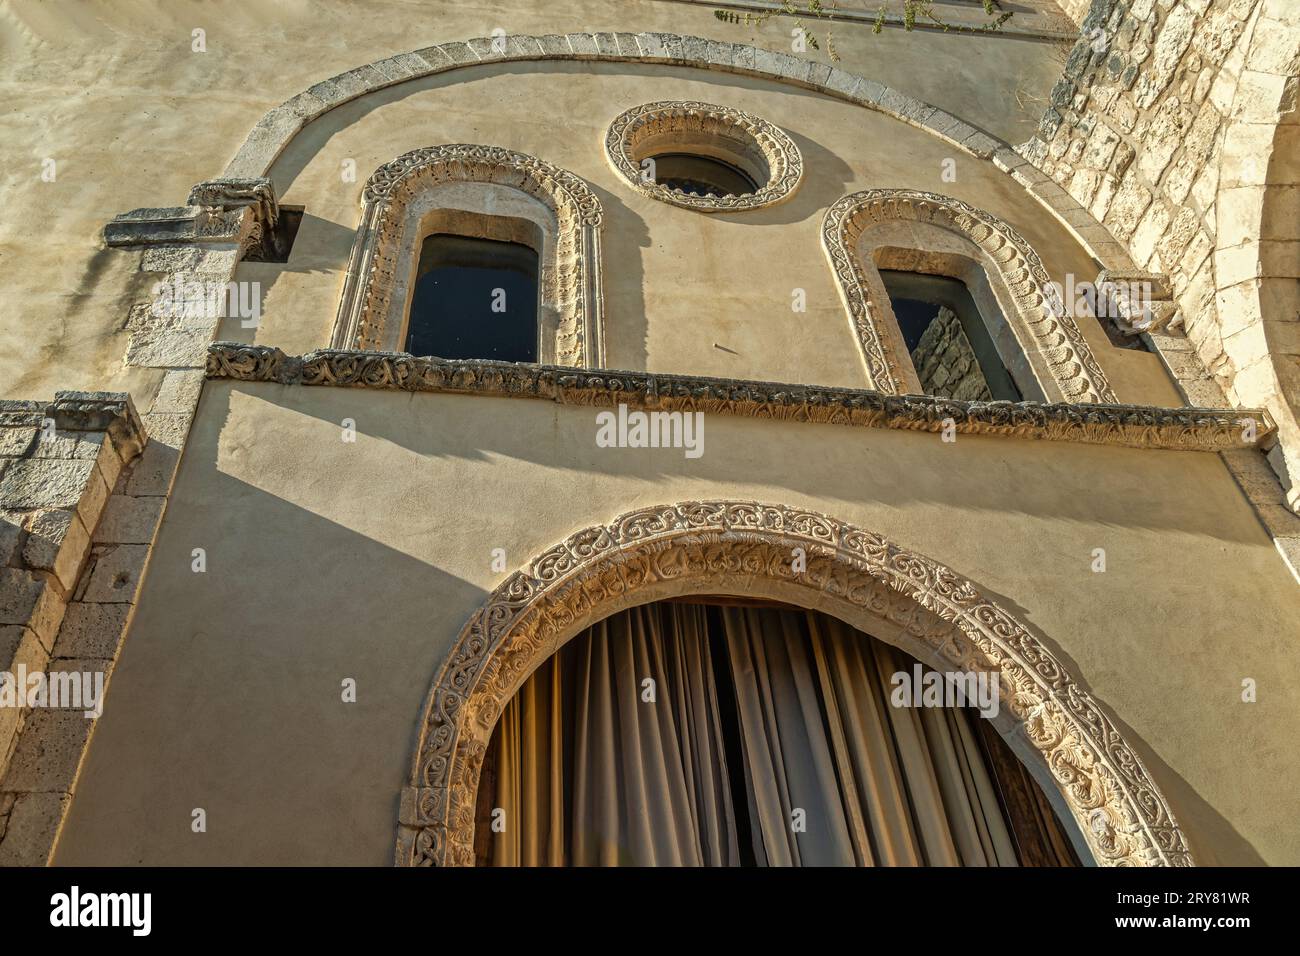 Vislumbre la arquitectura biritual, latina y bizantina de la Abadía de Santa Maria di Pulsano. Sus ermitas son lugares del corazón de FAI. Foto de stock